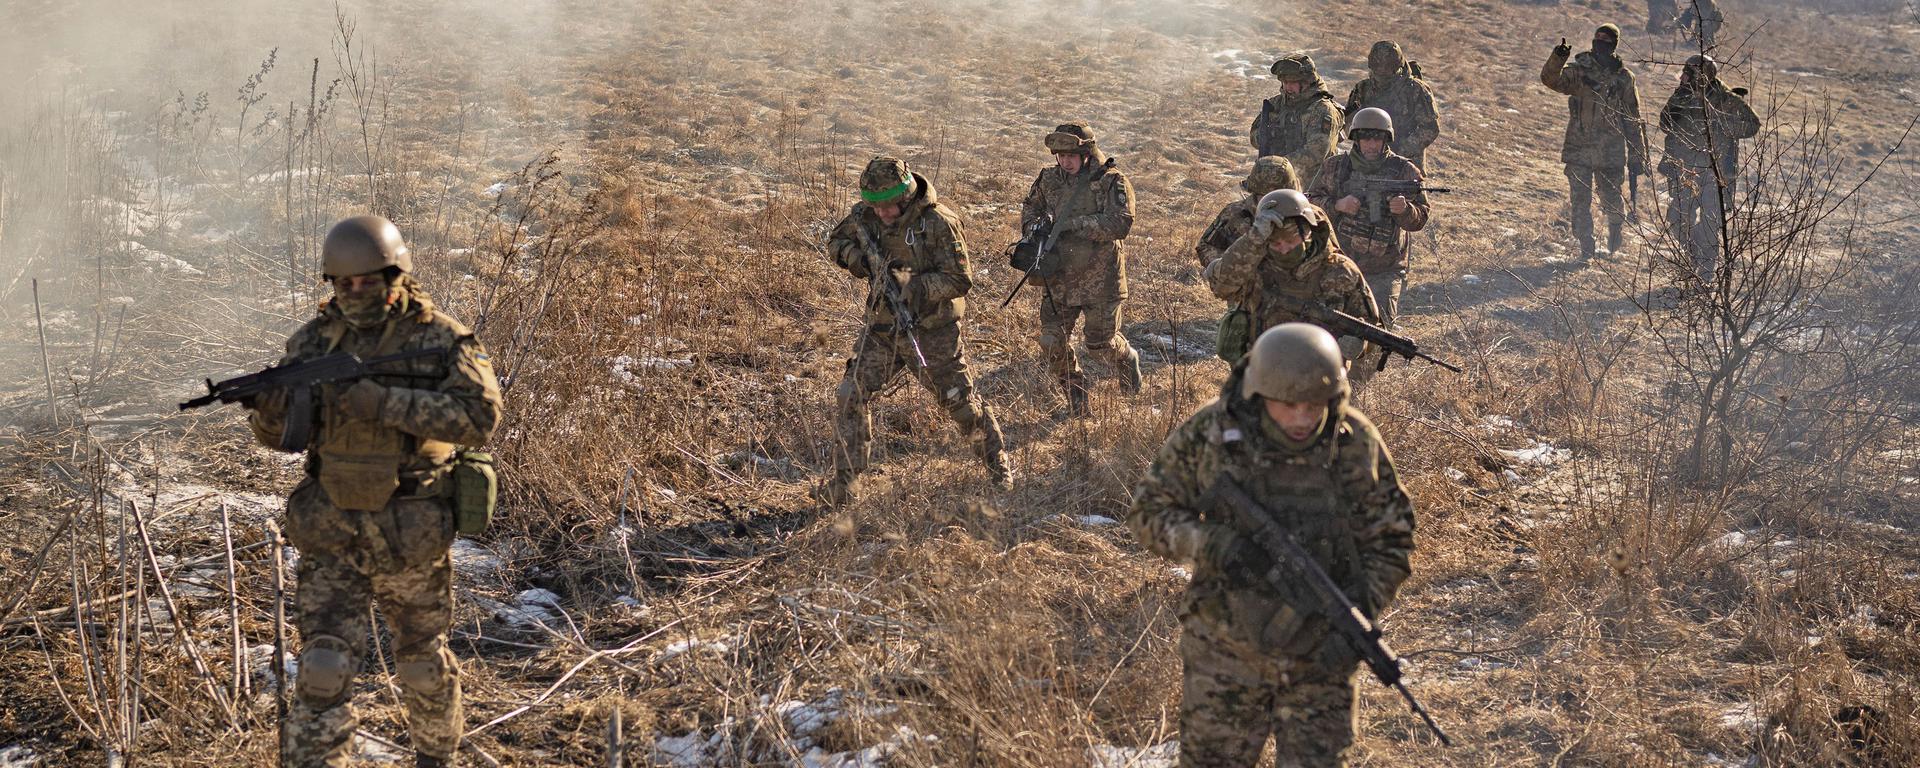 Tanques, deshielo y nuevas estrategias: ¿qué cambios trae para la guerra en Ucrania el fin del invierno?